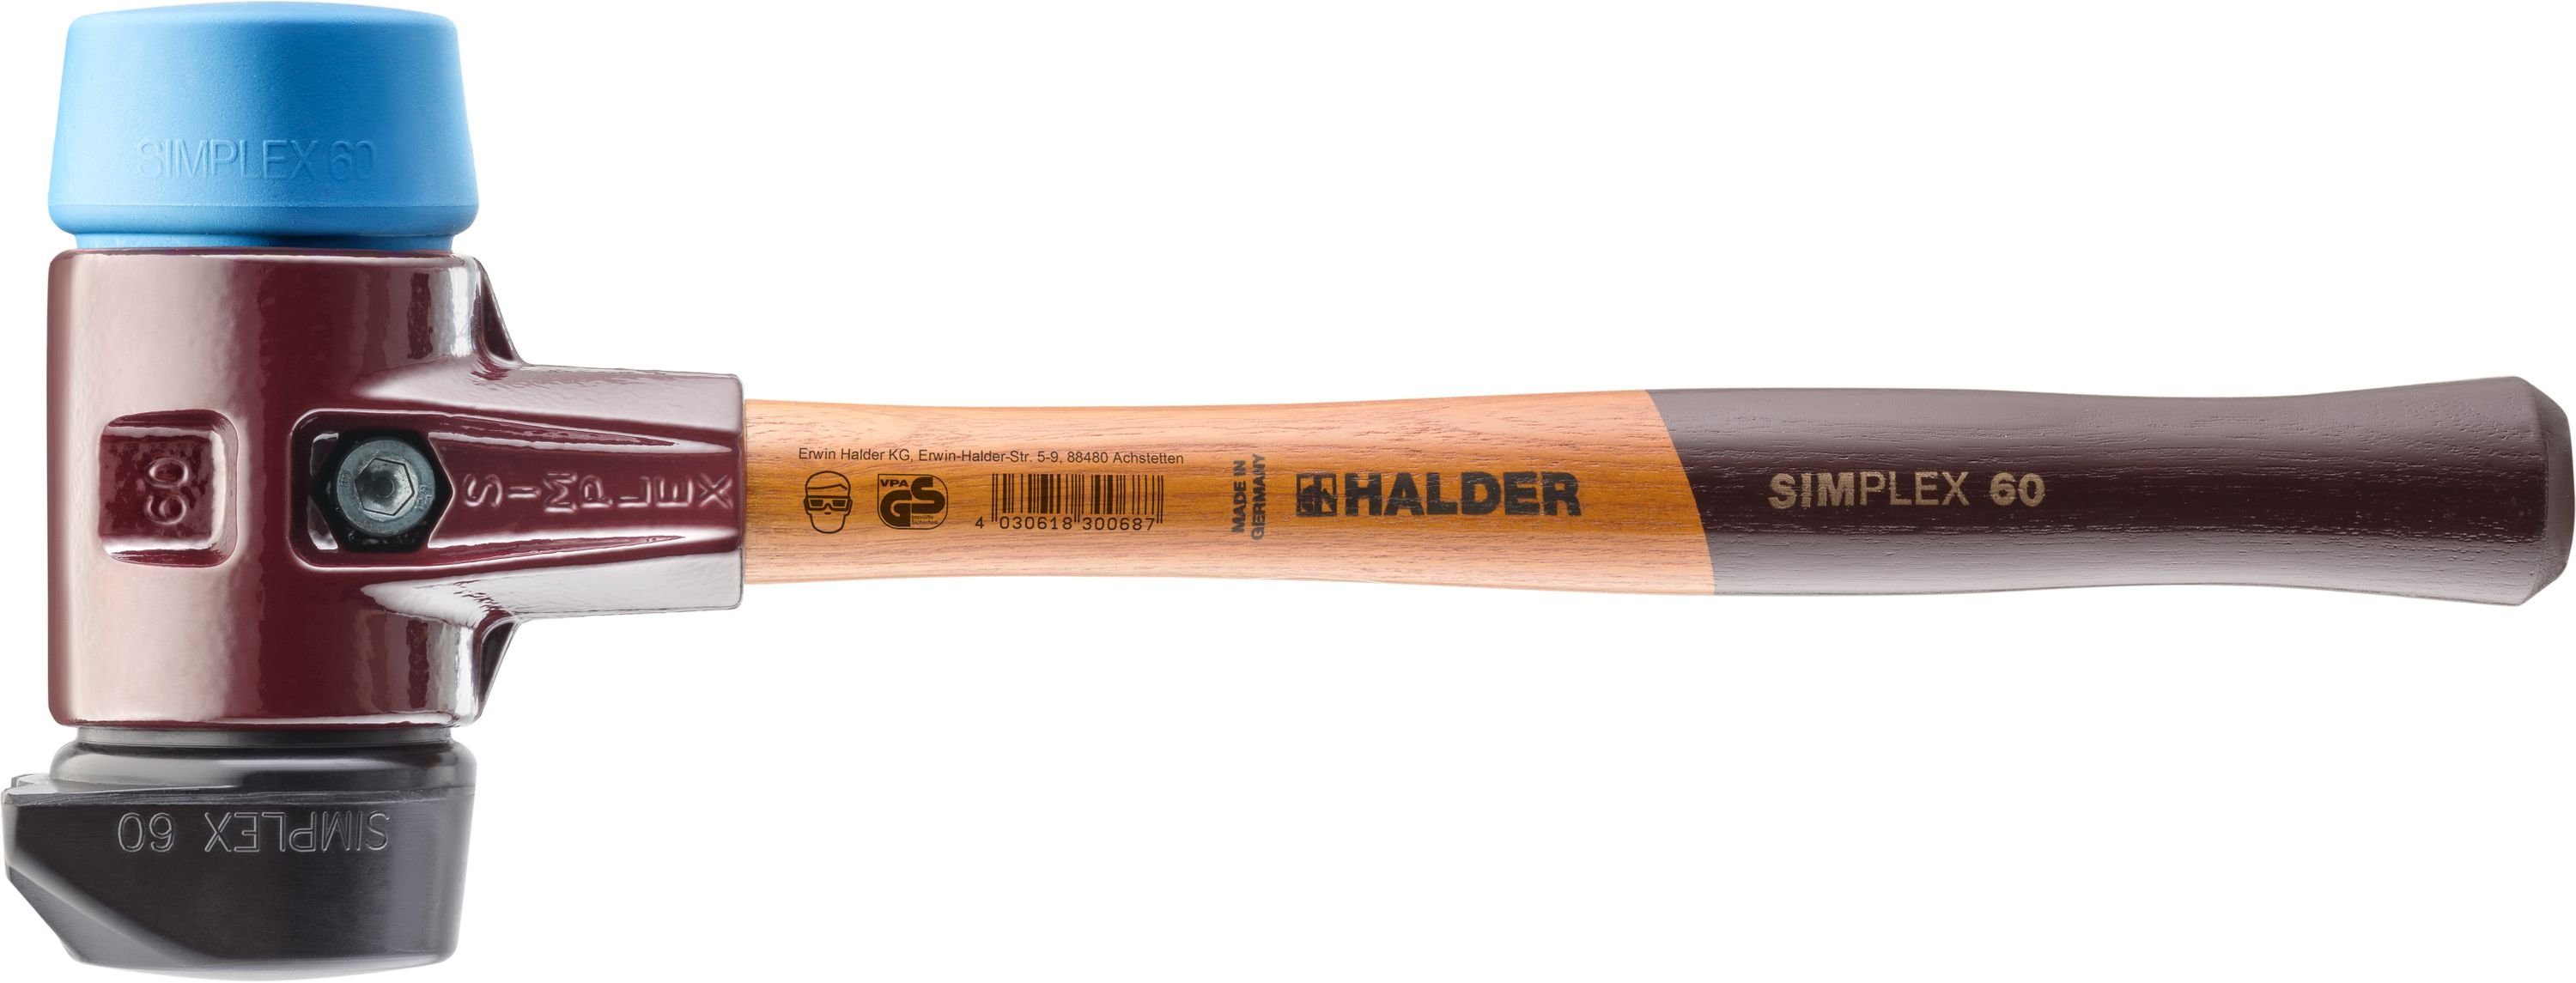 Halder KG TE-Gehäuse mit und Hammer Halder-SIMPLEX-Schonhammer Gummikomposition mit Holzstiel, Standfuss/TPE-soft